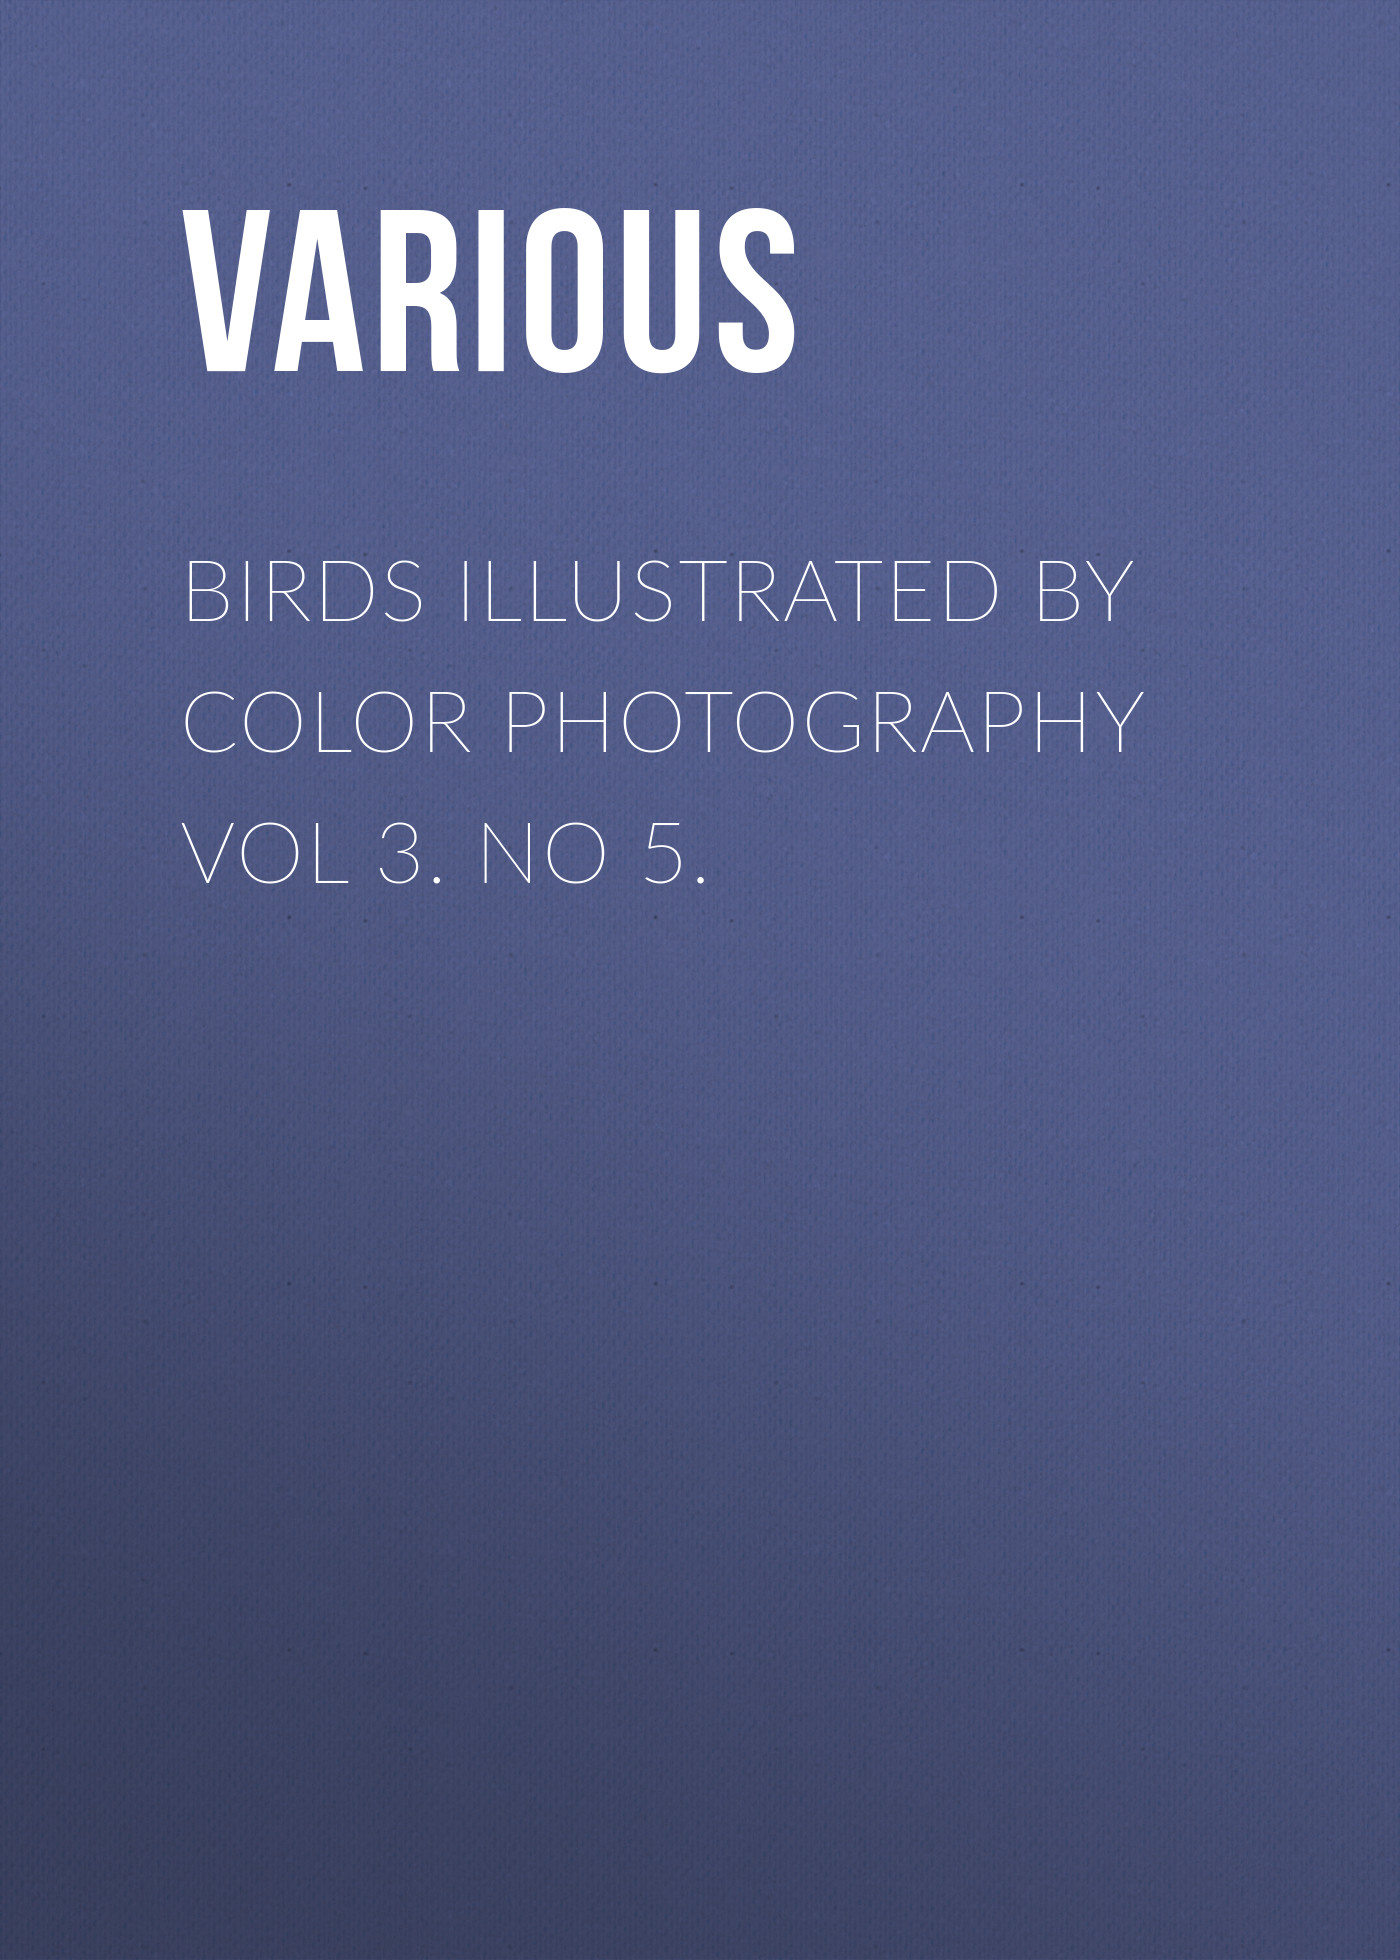 Книга Birds Illustrated by Color Photography Vol 3. No 5. из серии , созданная  Various, может относится к жанру Журналы, Биология, Природа и животные, Зарубежная образовательная литература. Стоимость электронной книги Birds Illustrated by Color Photography Vol 3. No 5. с идентификатором 25569271 составляет 0 руб.